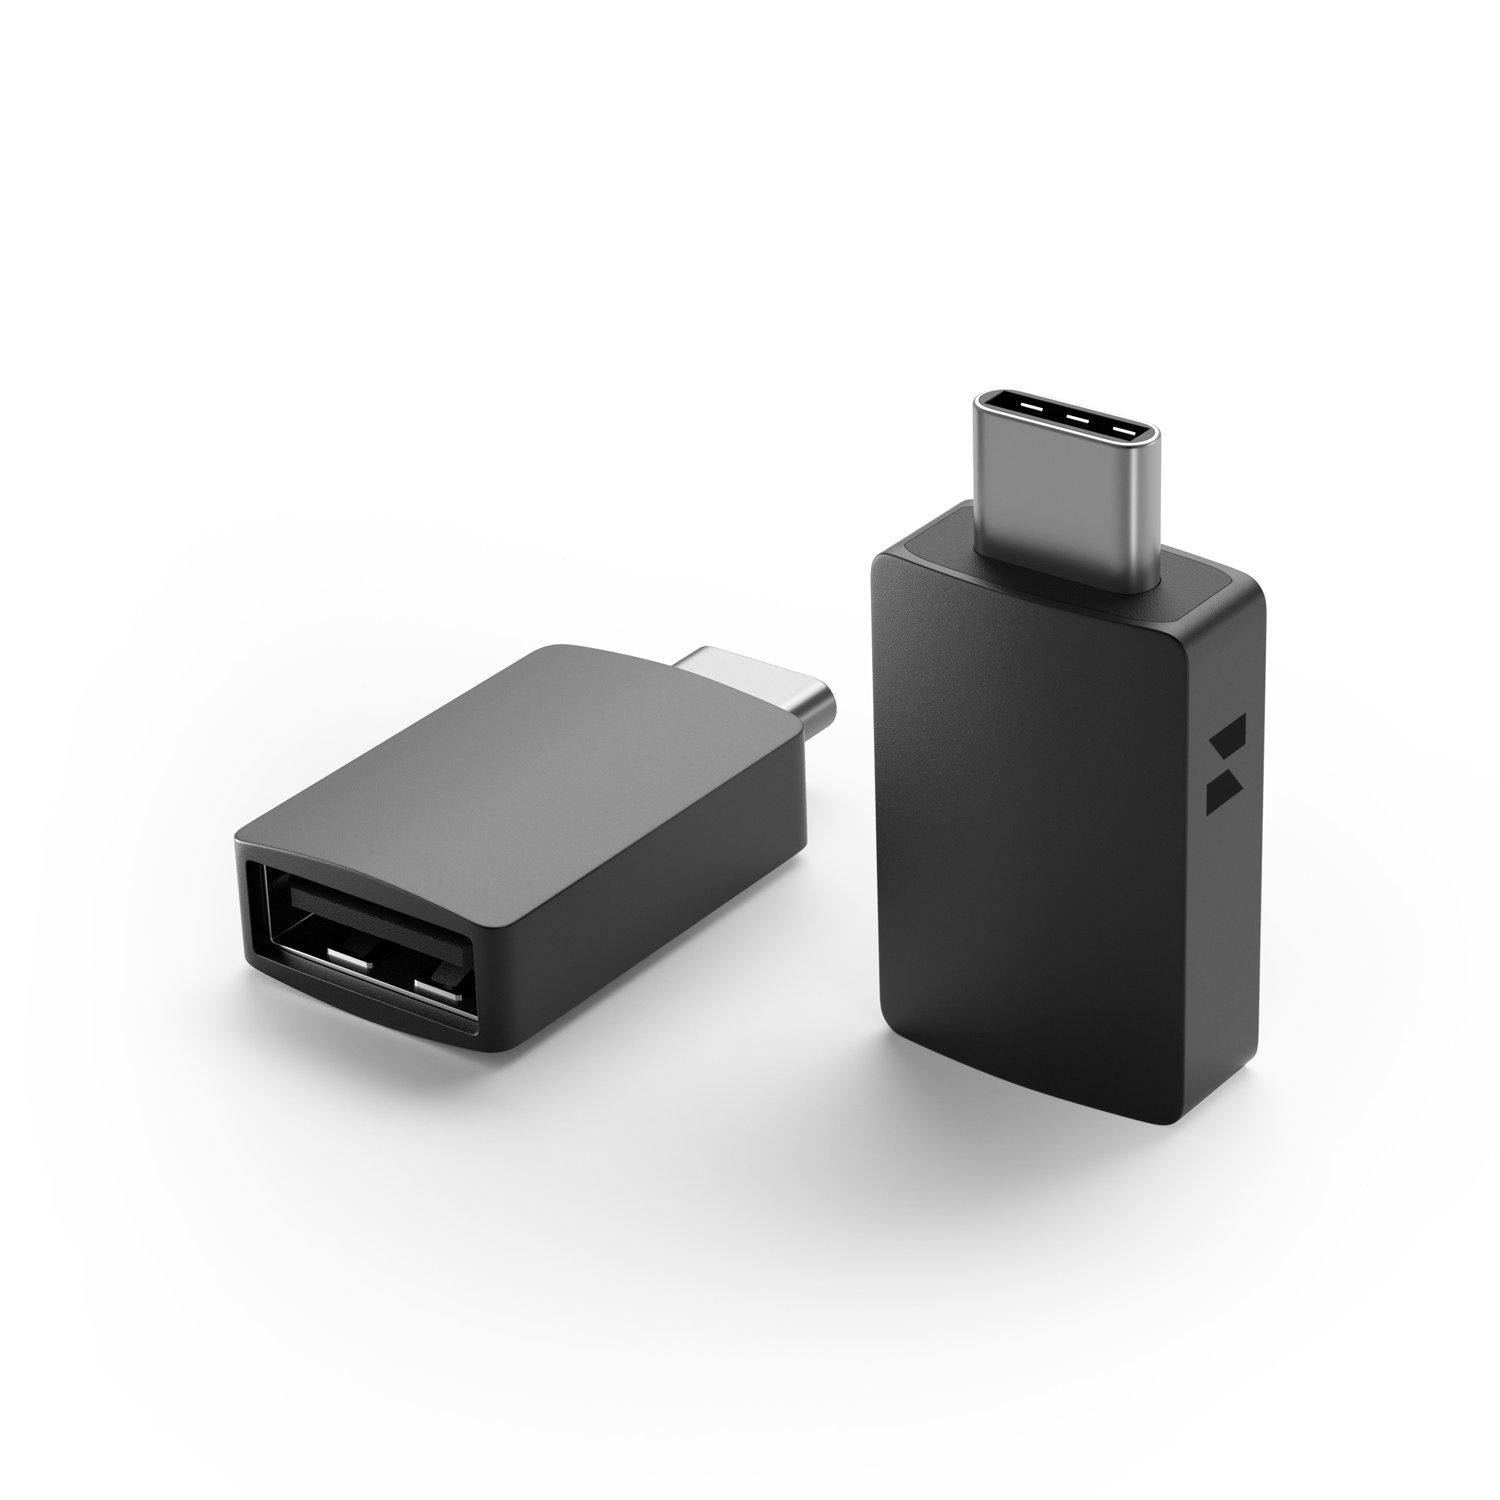 Goodwill Slibende undergrundsbane uni® USB C to USB Adapter, USB Type C Adaptor, USB C Dongle | Aluminum